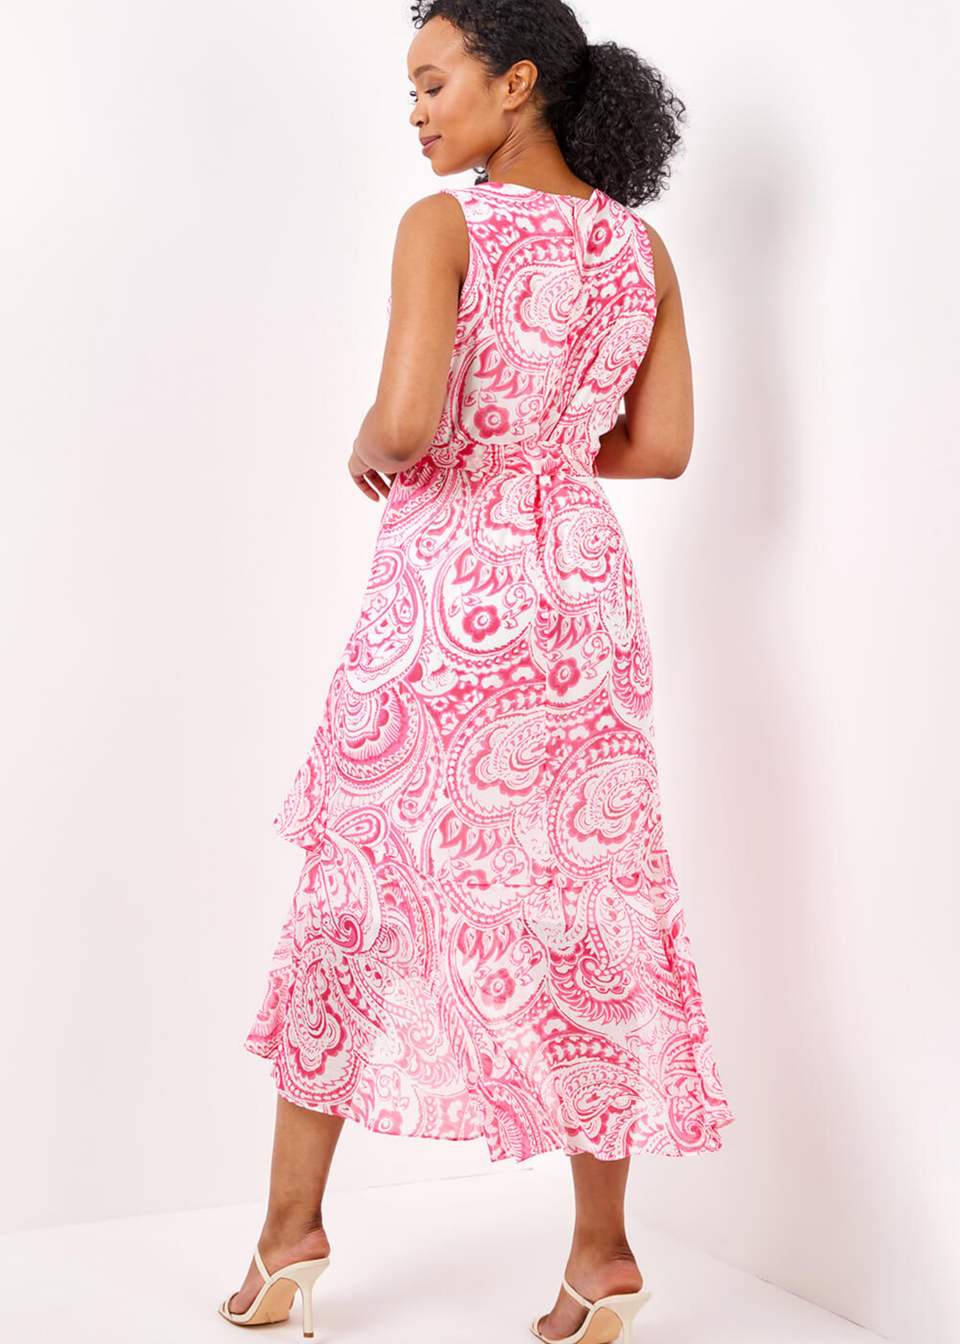 Roman Pink Petite Paisley Print Dipped Frill Hem Dress